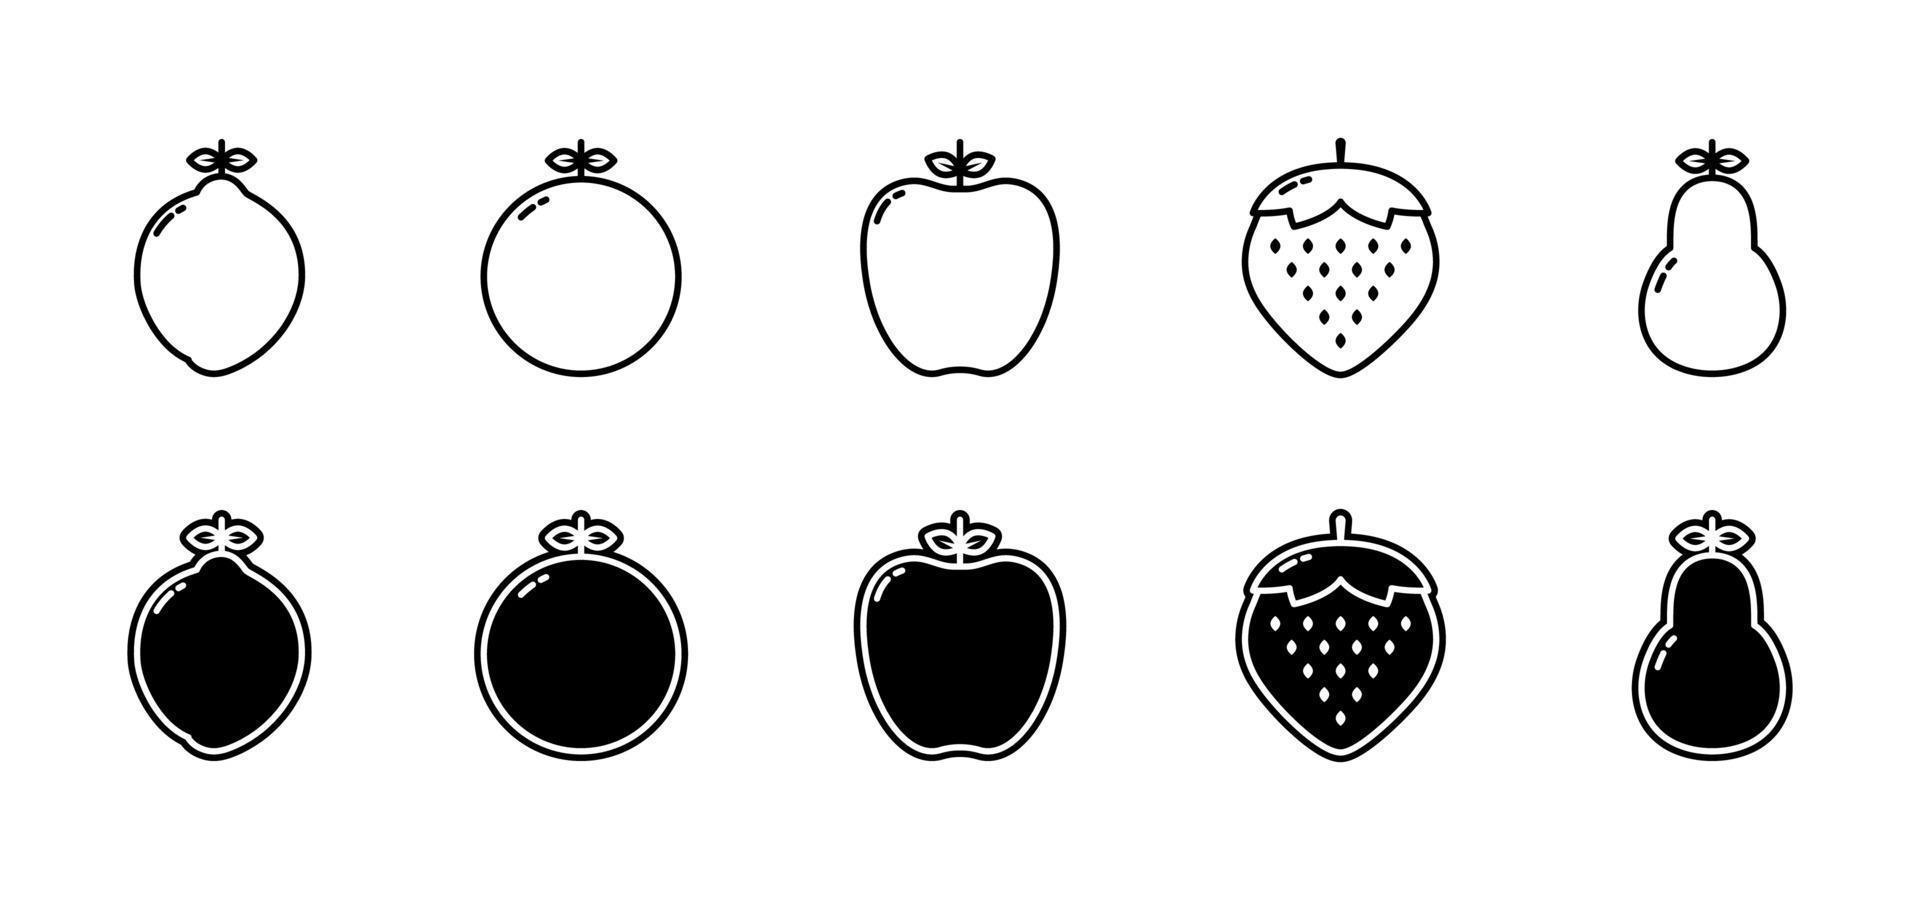 raccolta di icone di frutta isolata su sfondo bianco. semplice e pulito. vettoriale modificabile